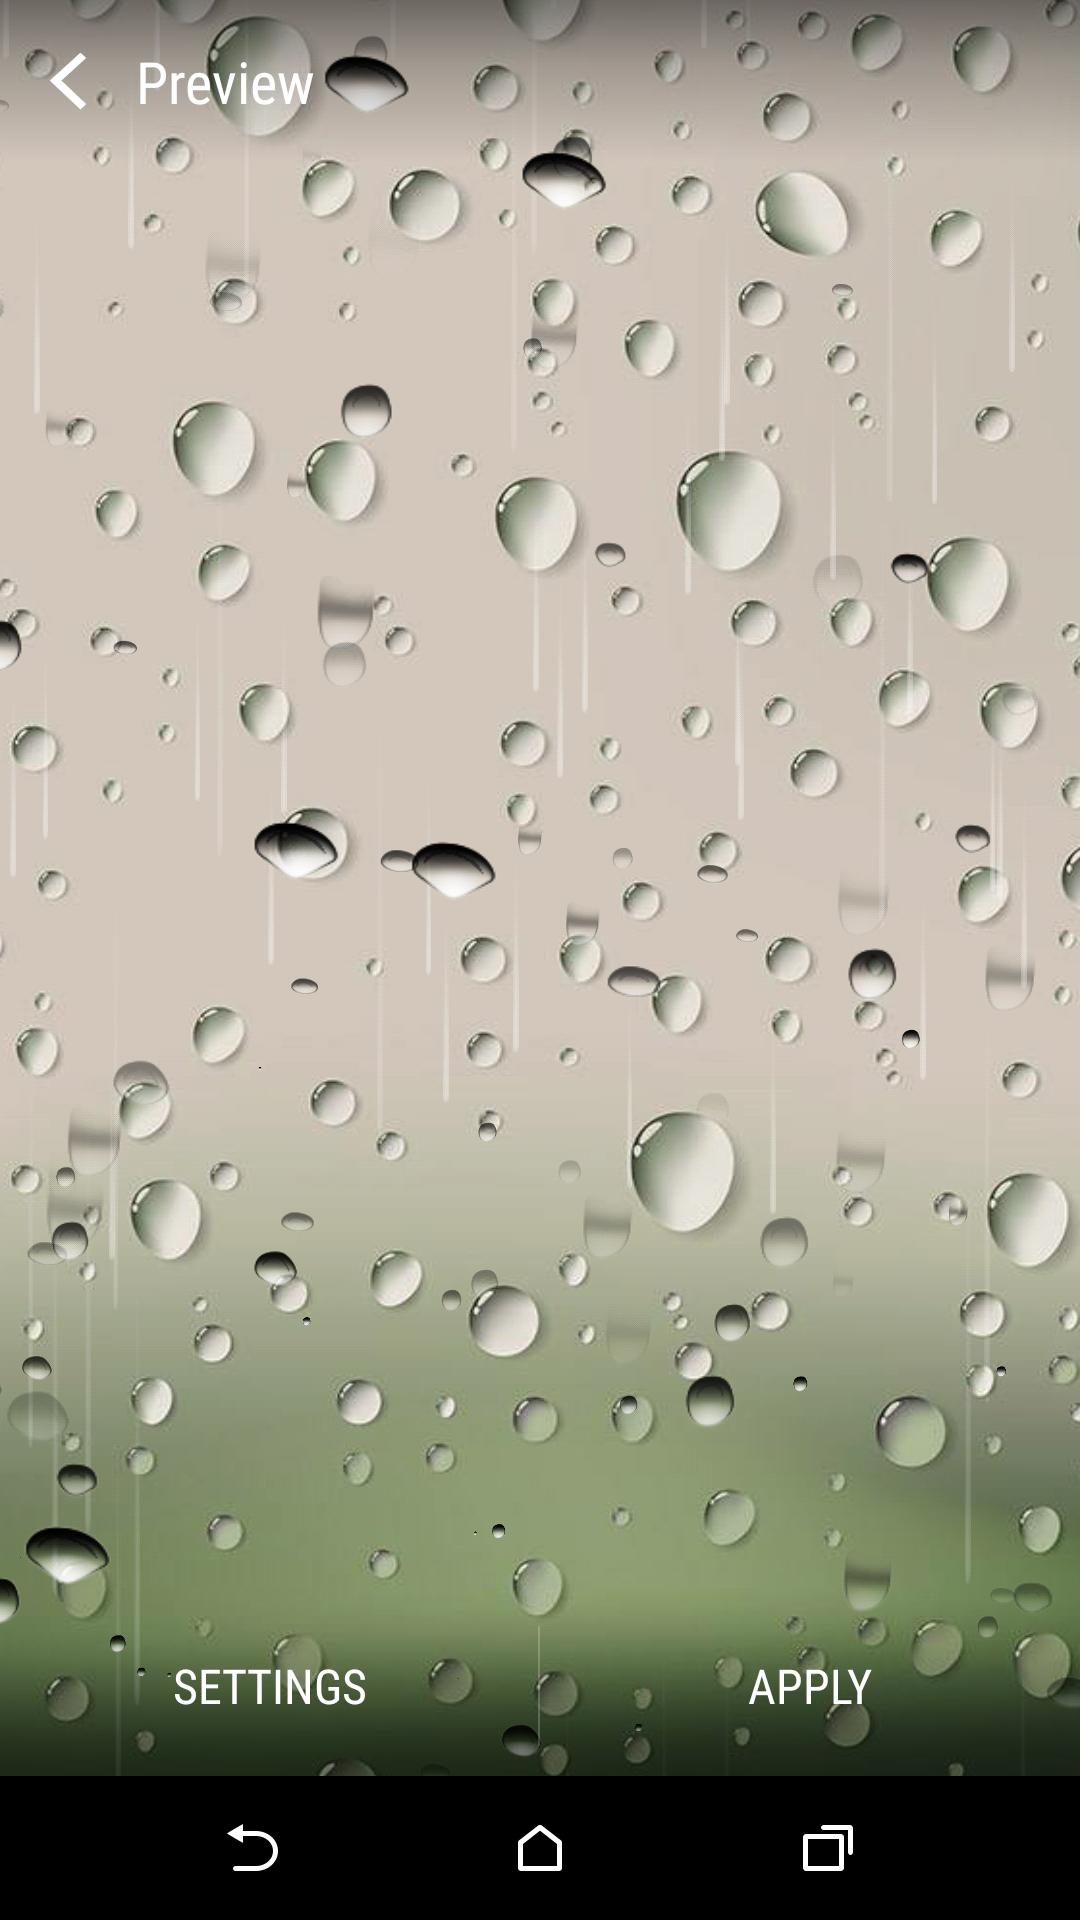 Android 用の 雨の日ライブ壁紙 Apk をダウンロード